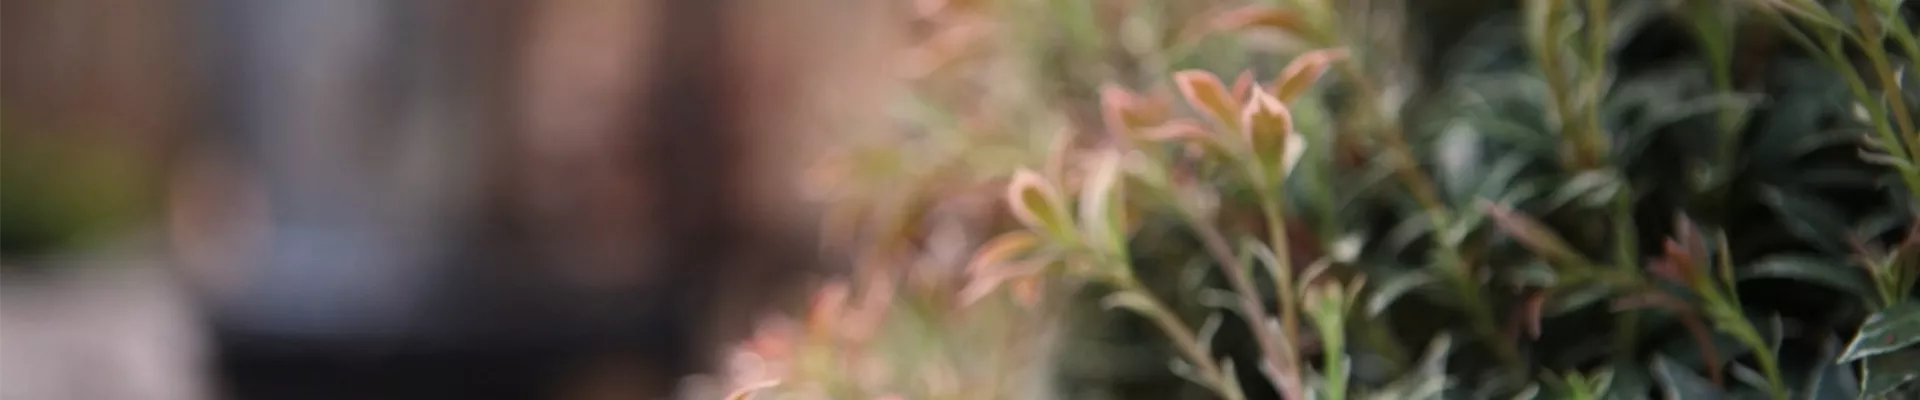 Japanisches Schattenglöckchen - Einpflanzen in den Garten (Thumbnail).jpg